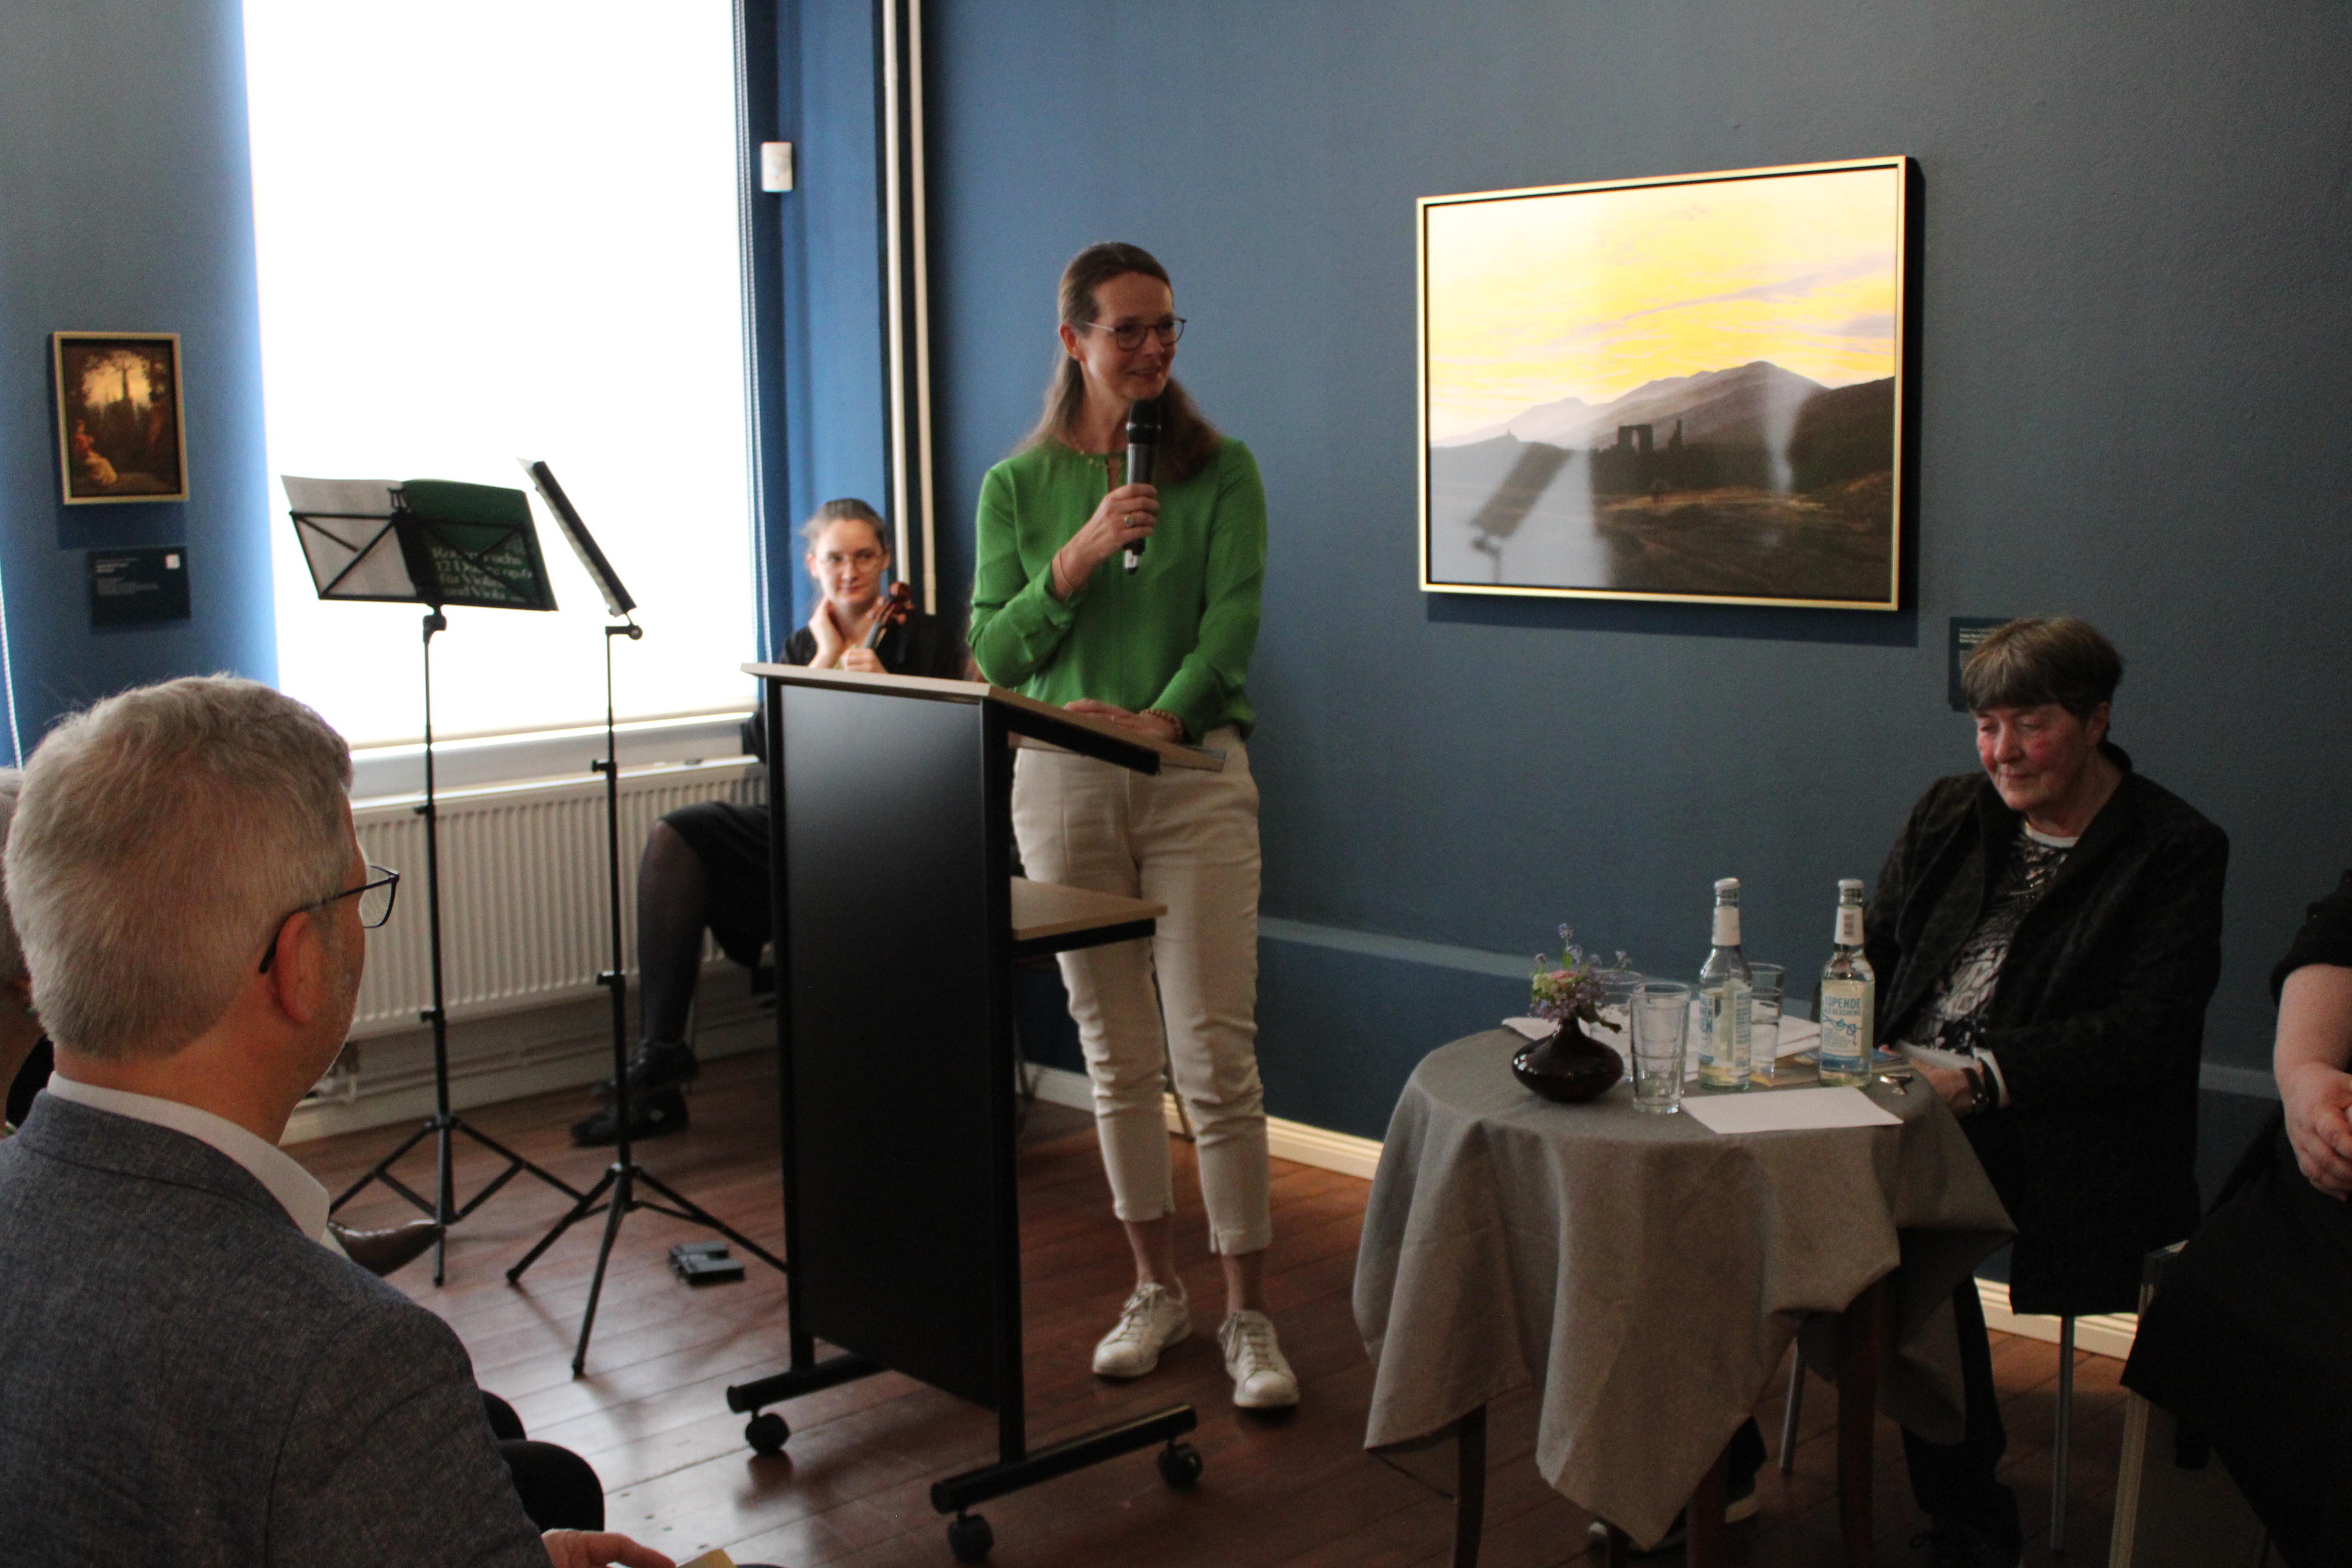 Eine Frau, Bettina Martin, hält eine Rede. Eine weitere Frau, Hannelore Kohl, sitzt im Hintergrund auf einem Stuhl auf der Bühne.